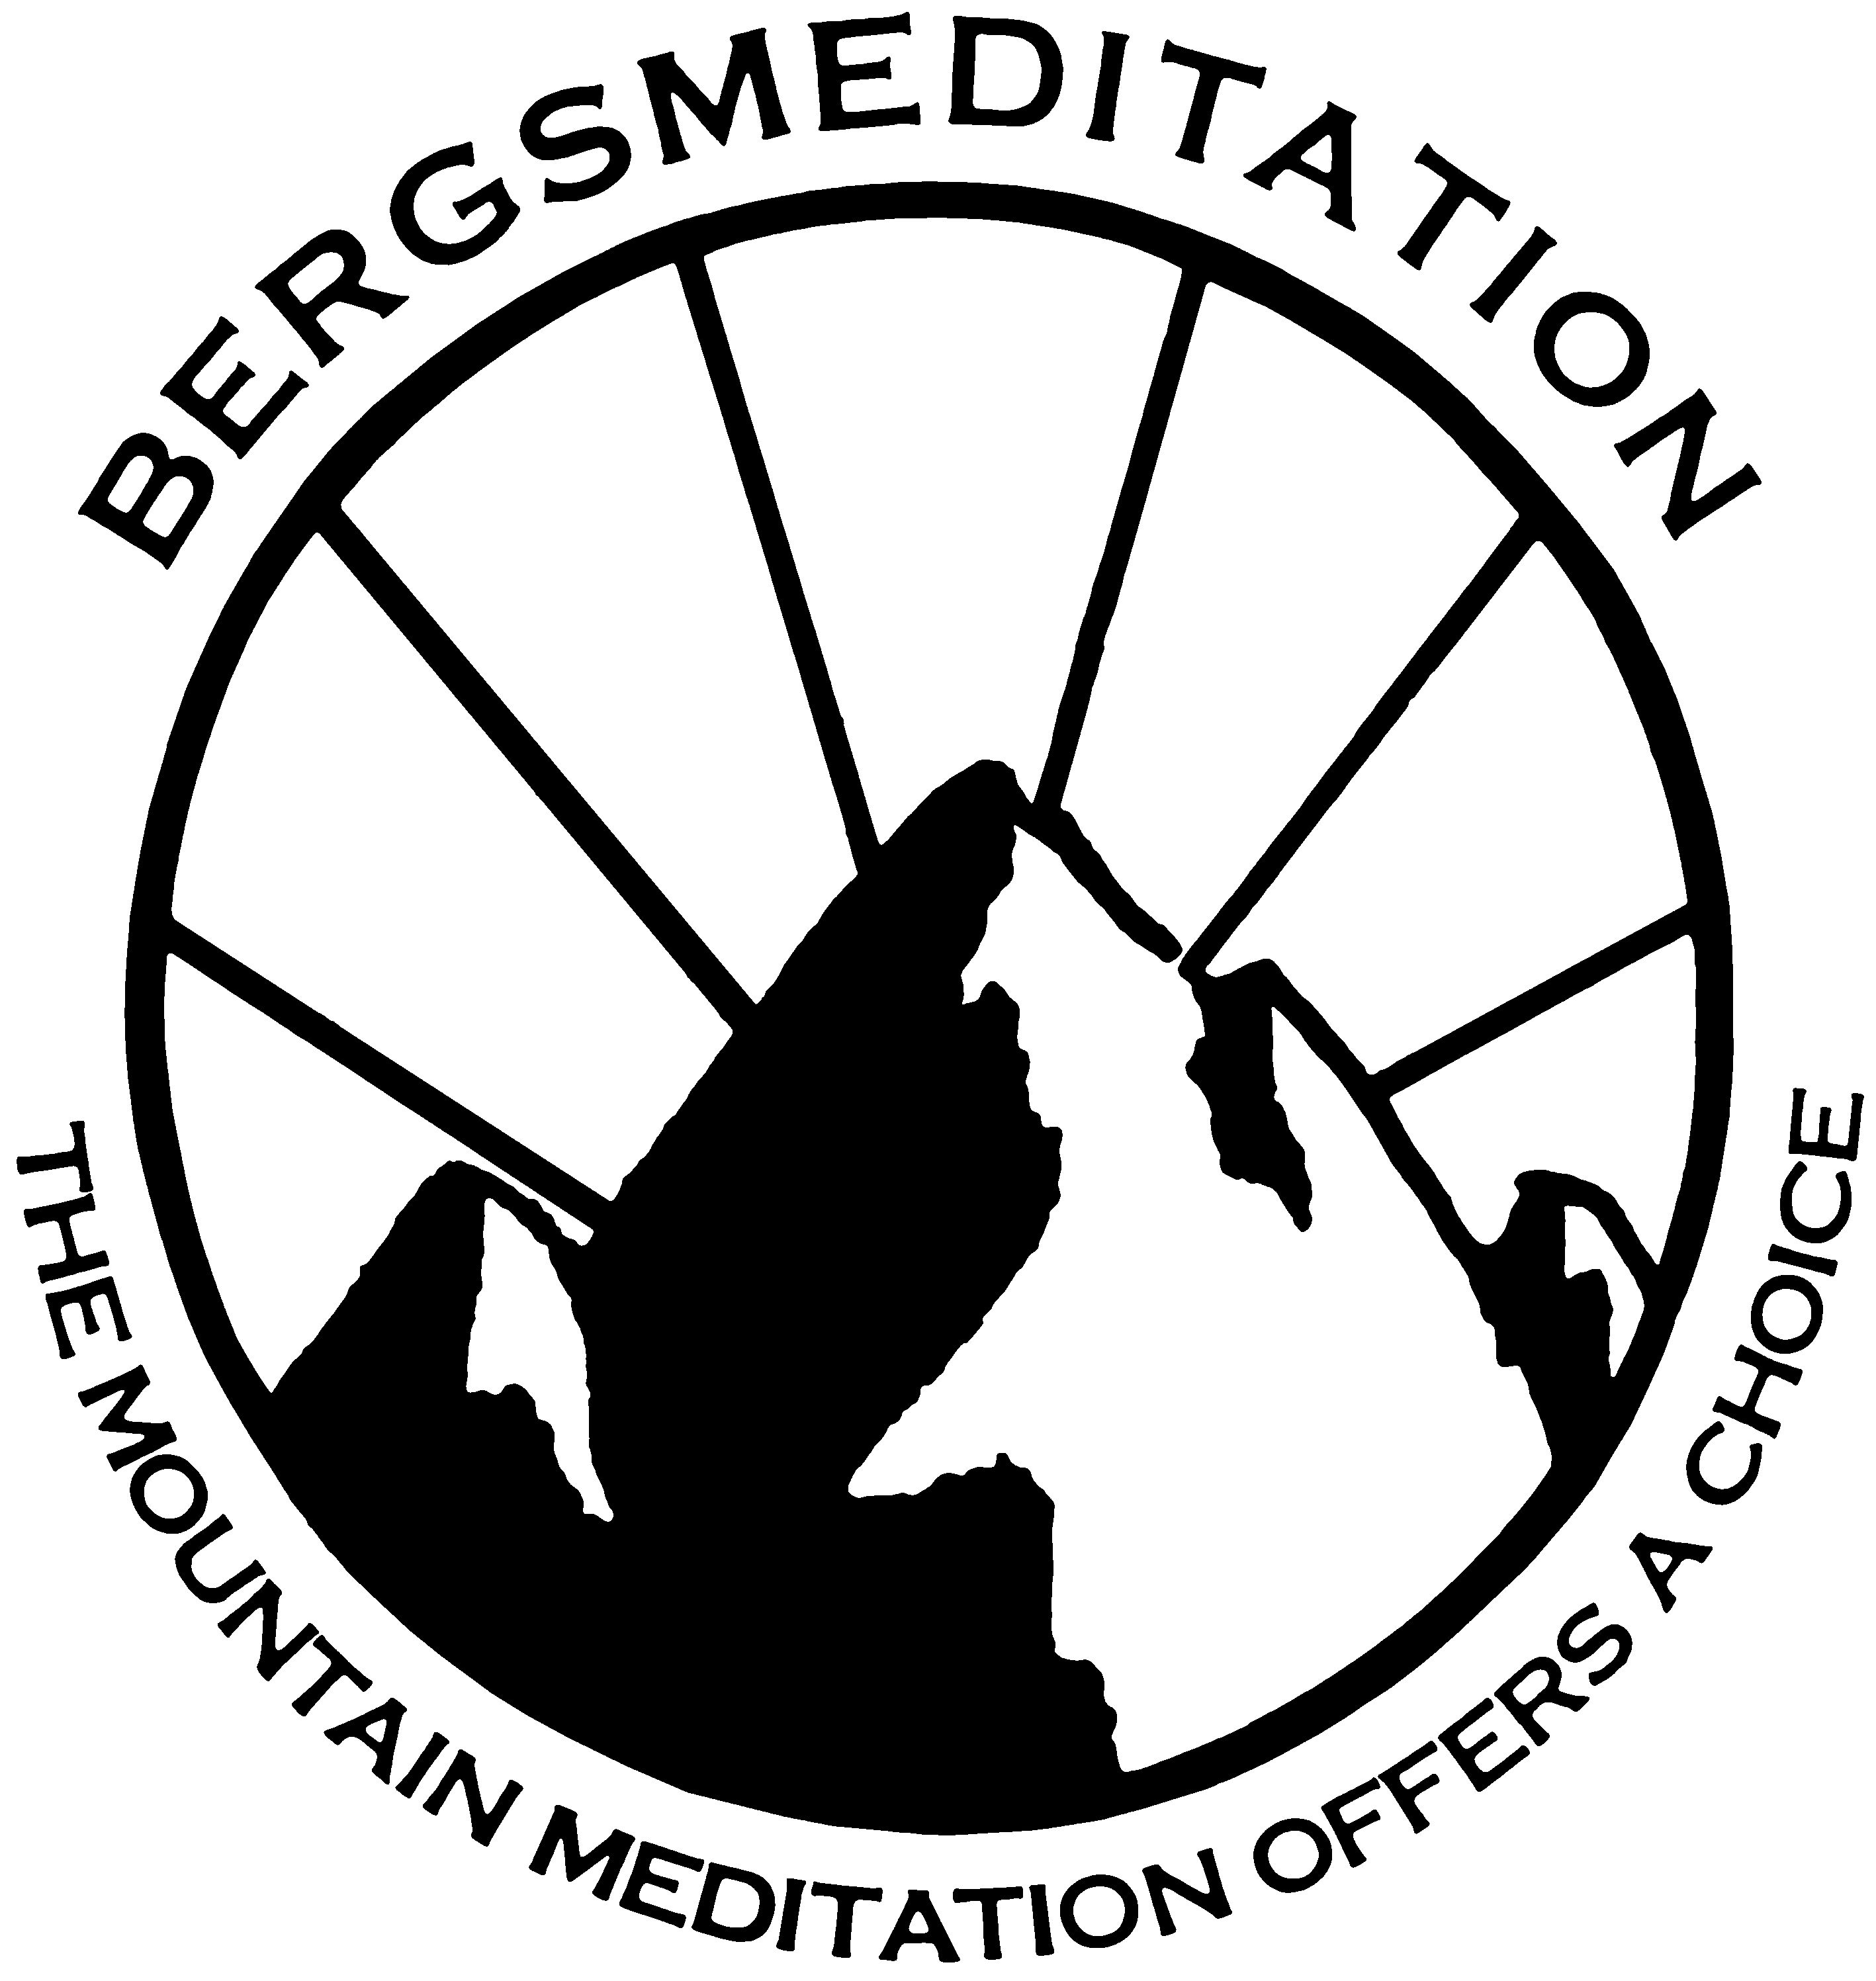 Bergsmeditation The mountain meditation offers a choice